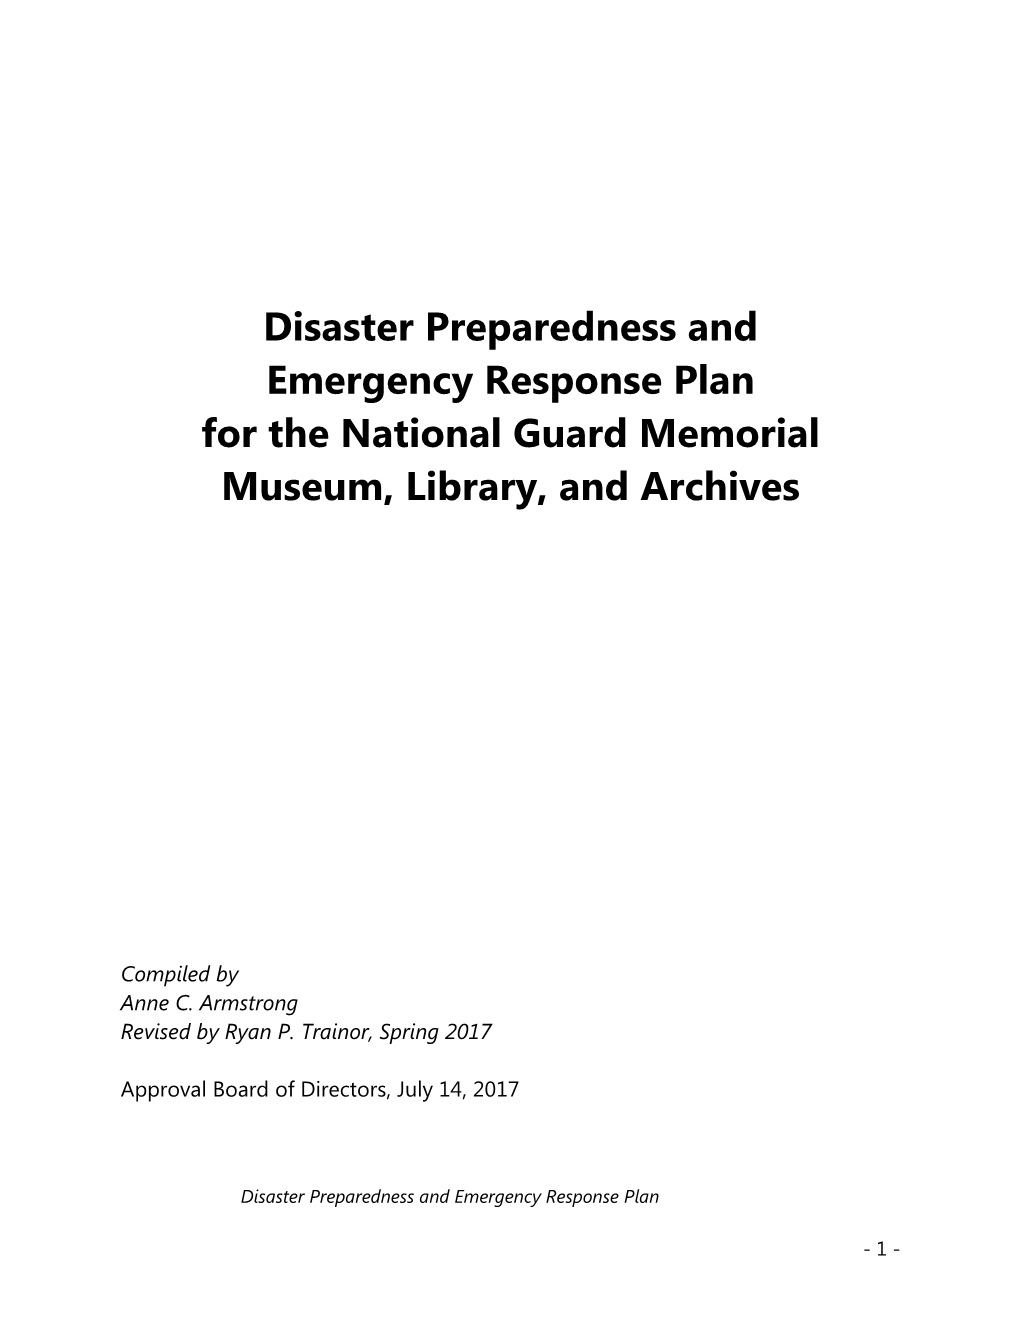 Disaster/Emergency Response Plan